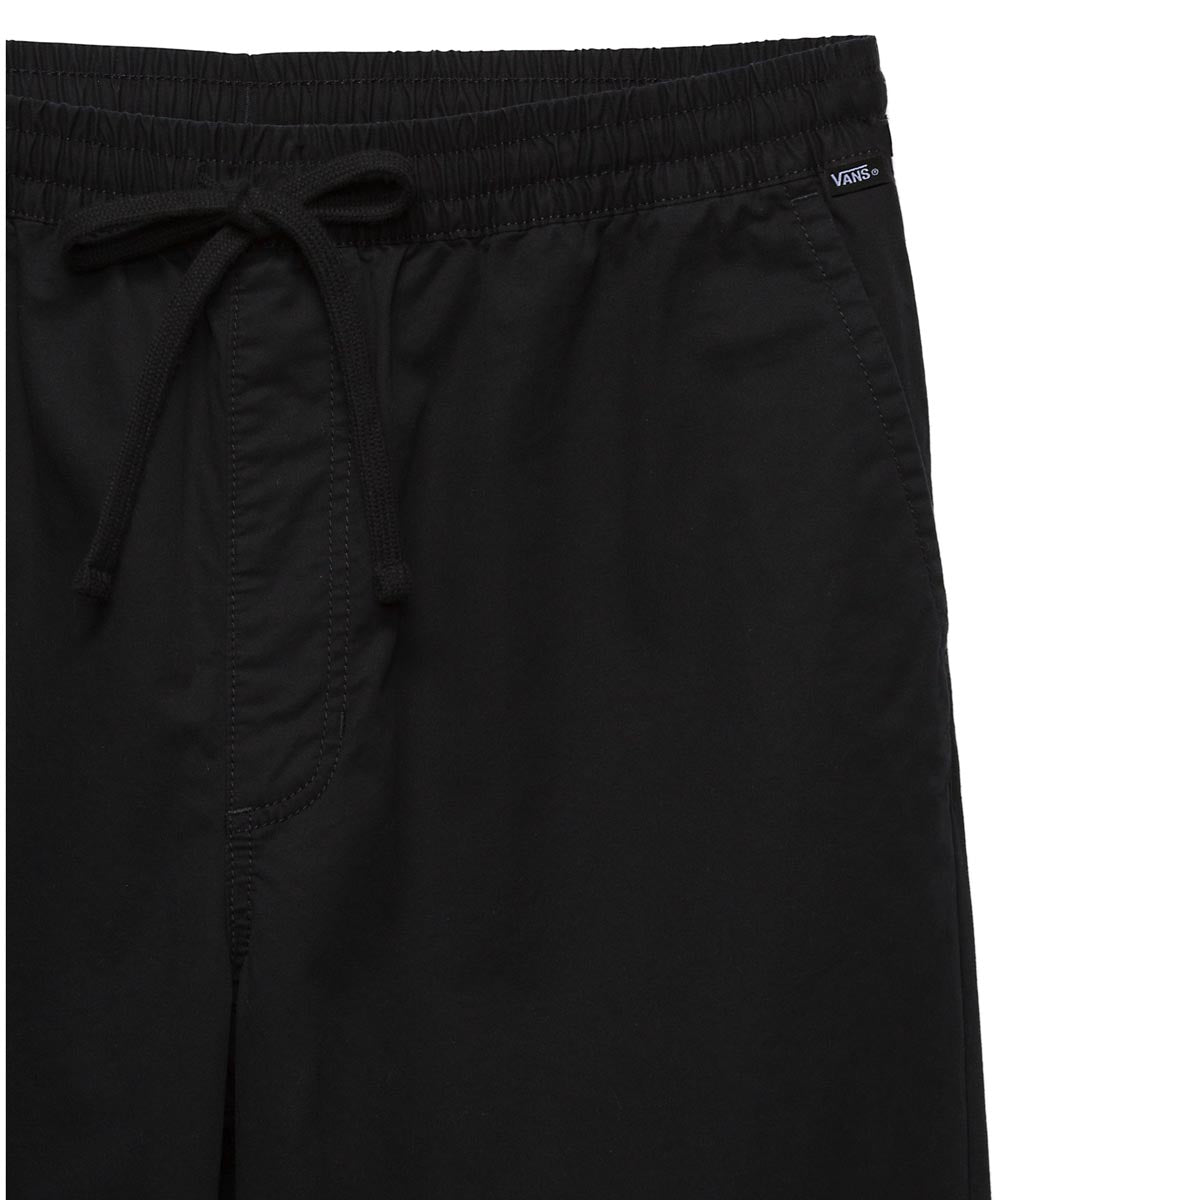 Vans Range Baggy Tapered Elastic Waist Pants - Black image 4